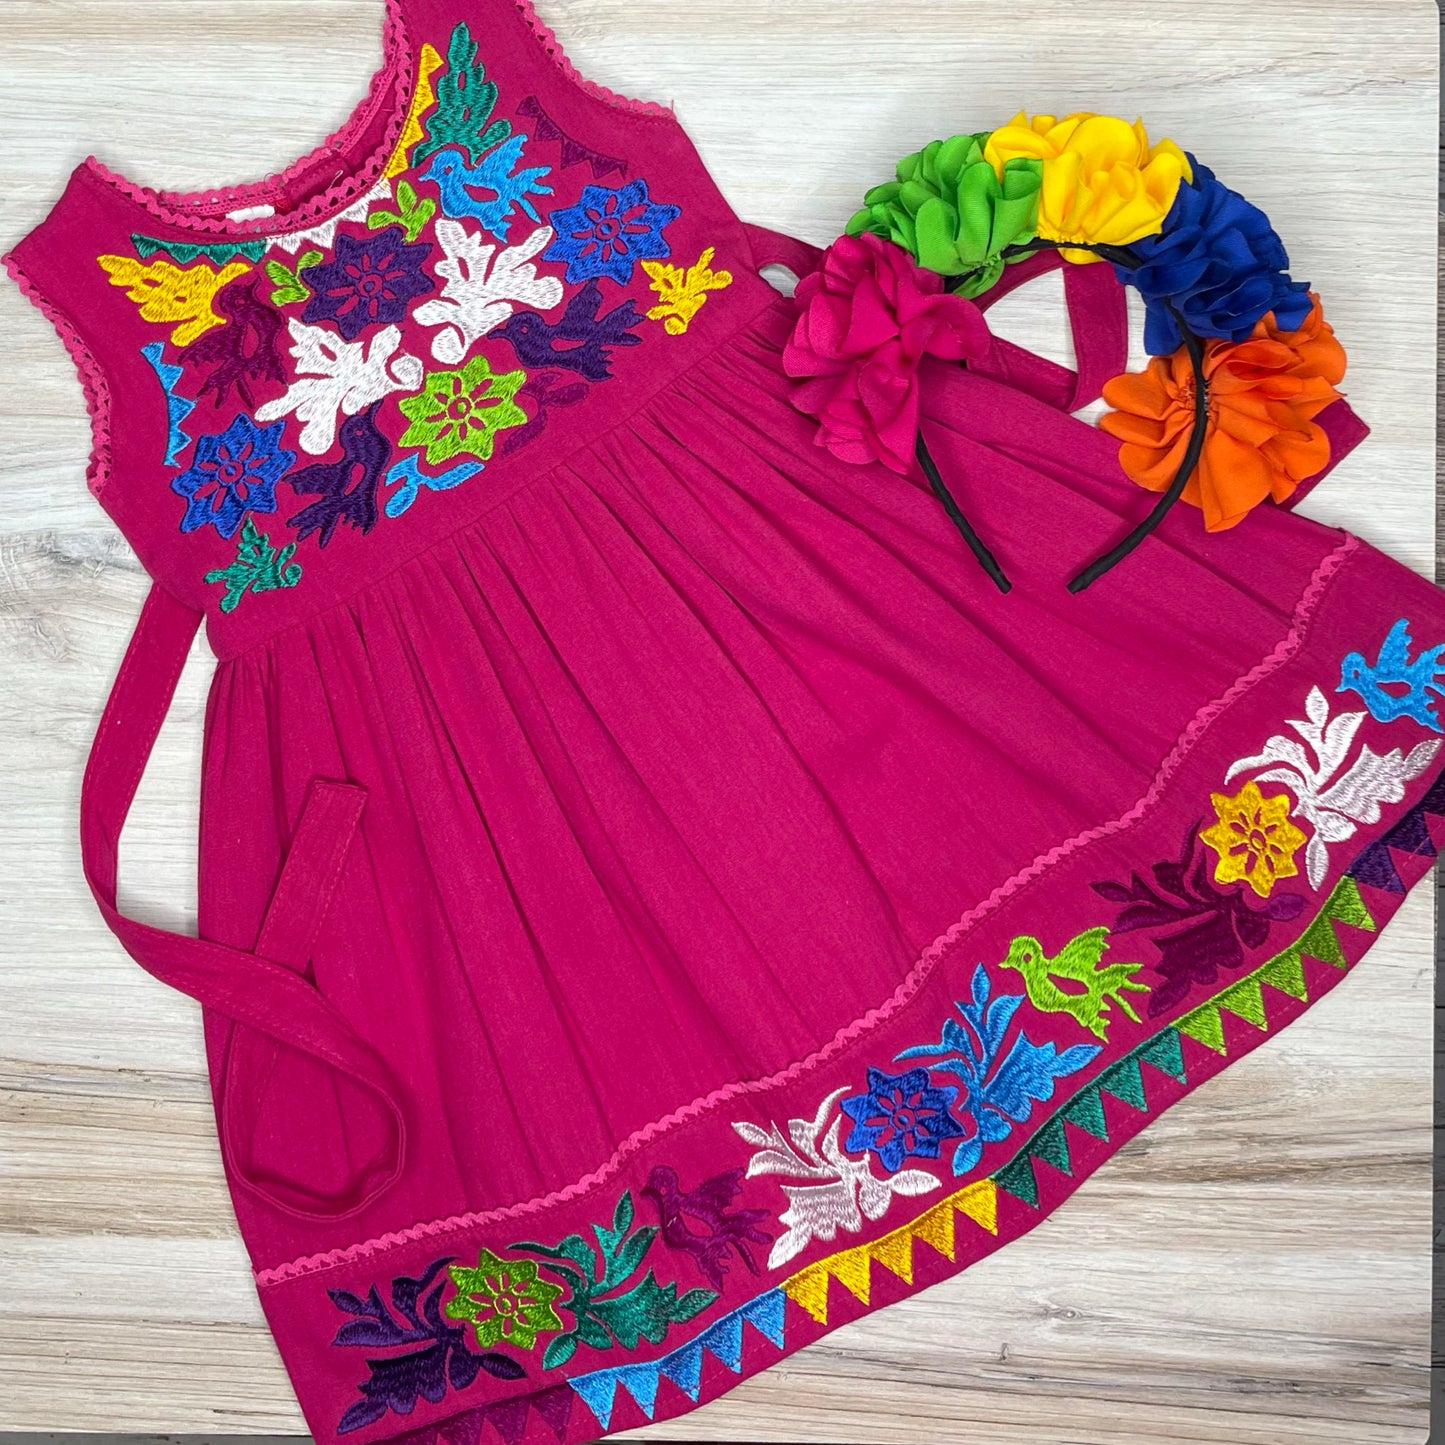 Robe de fille mexicaine Jalapa